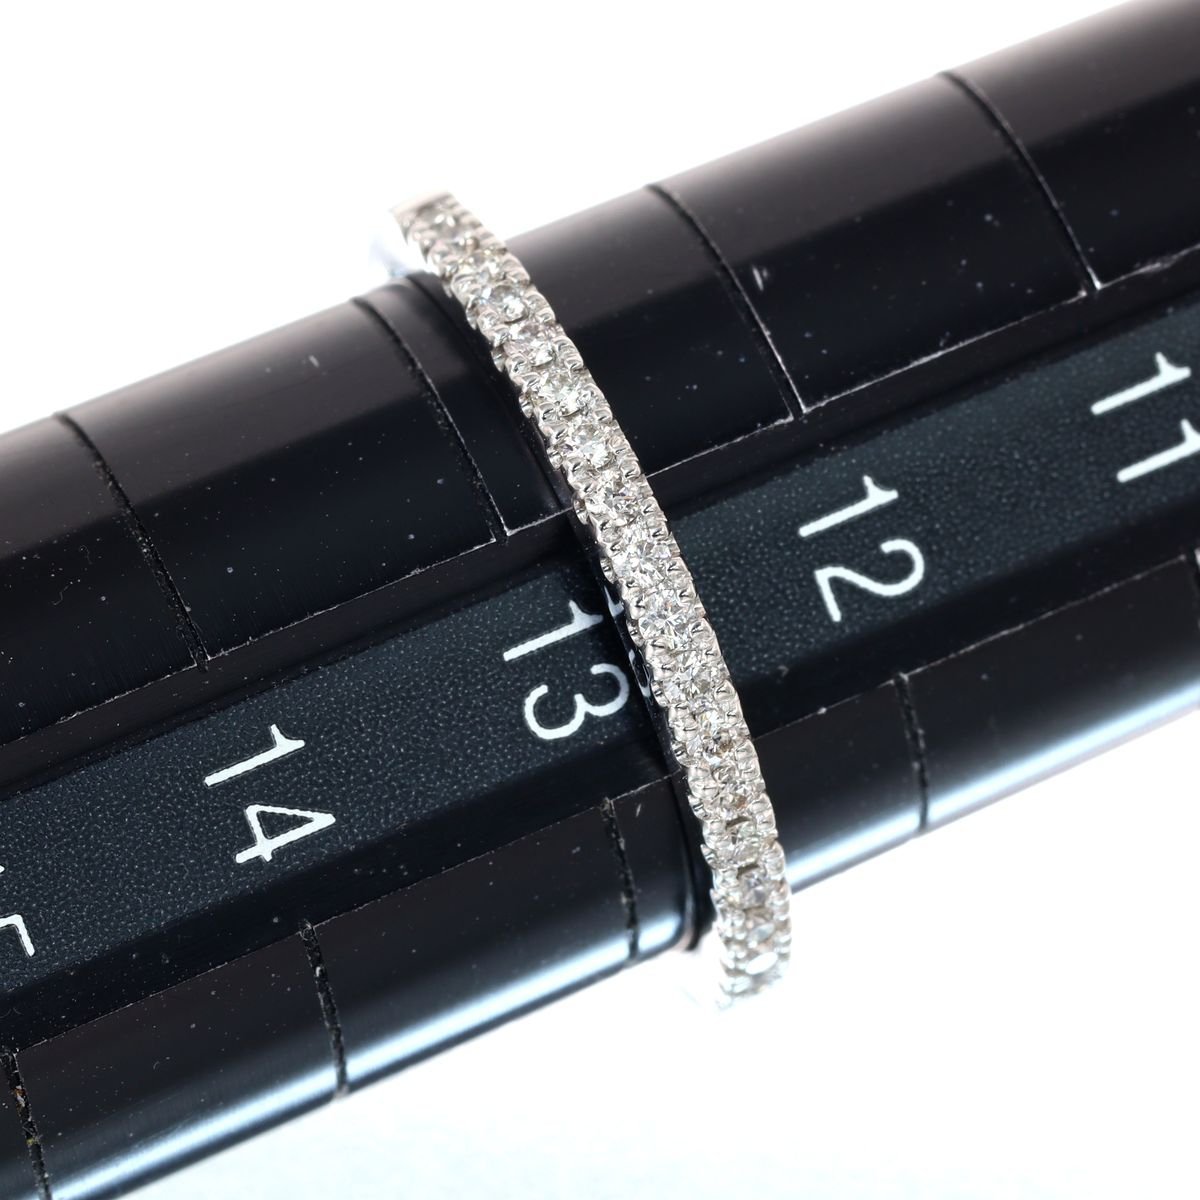 日本売りPt950 ダイヤモンド ハーフエタニティリング 2.6g 0.15ct 超美品 ◎jz067 プラチナ台